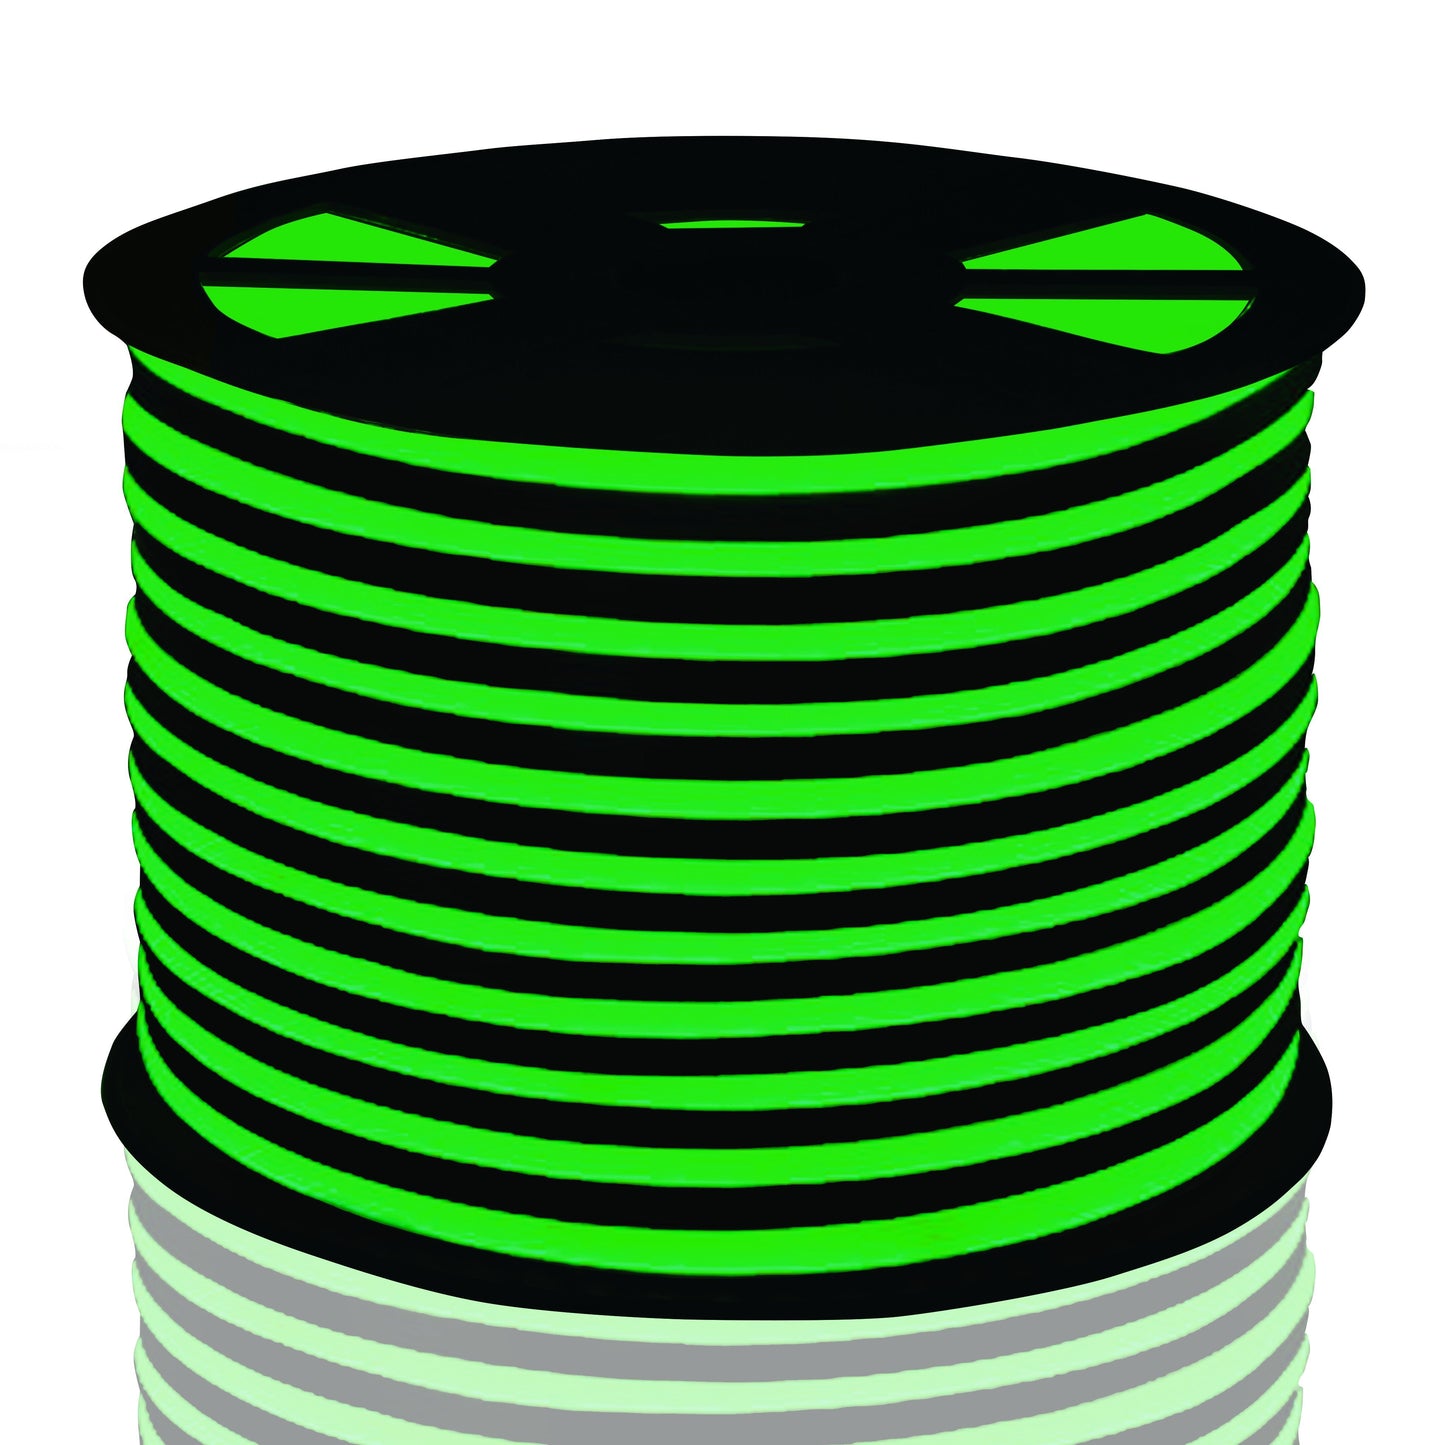 digital rendering of neon green led lights strip on black reel